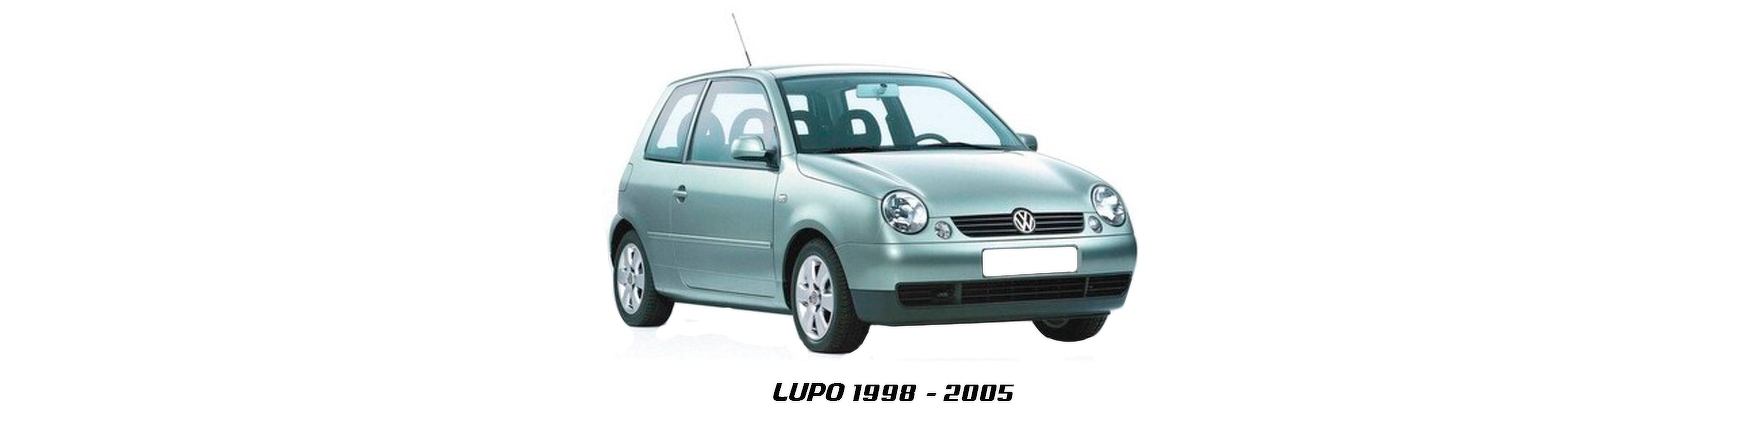 Piezas y Recambios de Volkswagen Lupo (6X|6E) de 1998 a 2005 | Veramauto.es